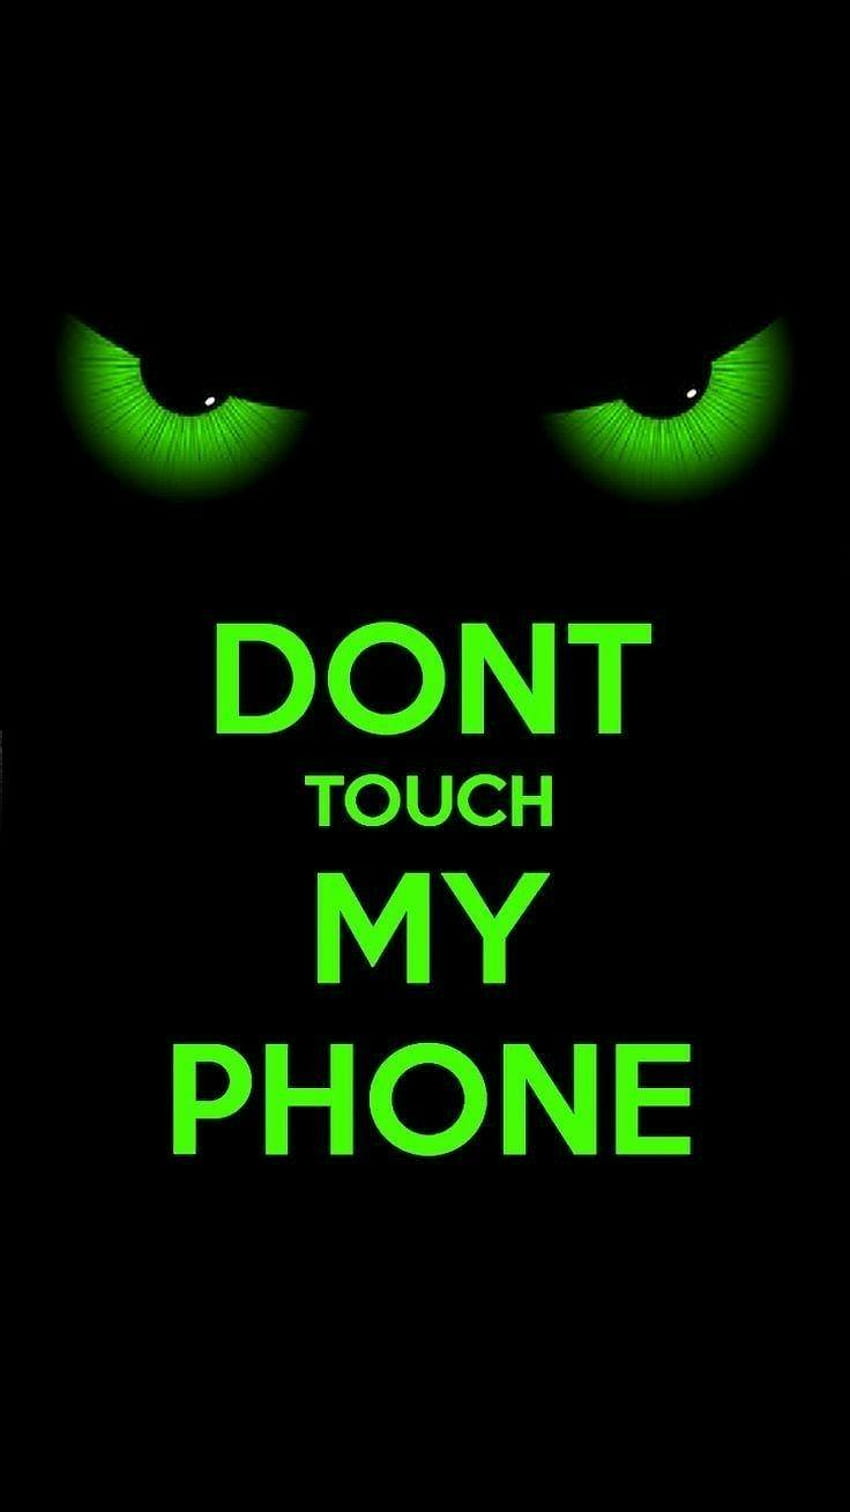 ボード「Don't touch me, best for my phone」のピン HD電話の壁紙